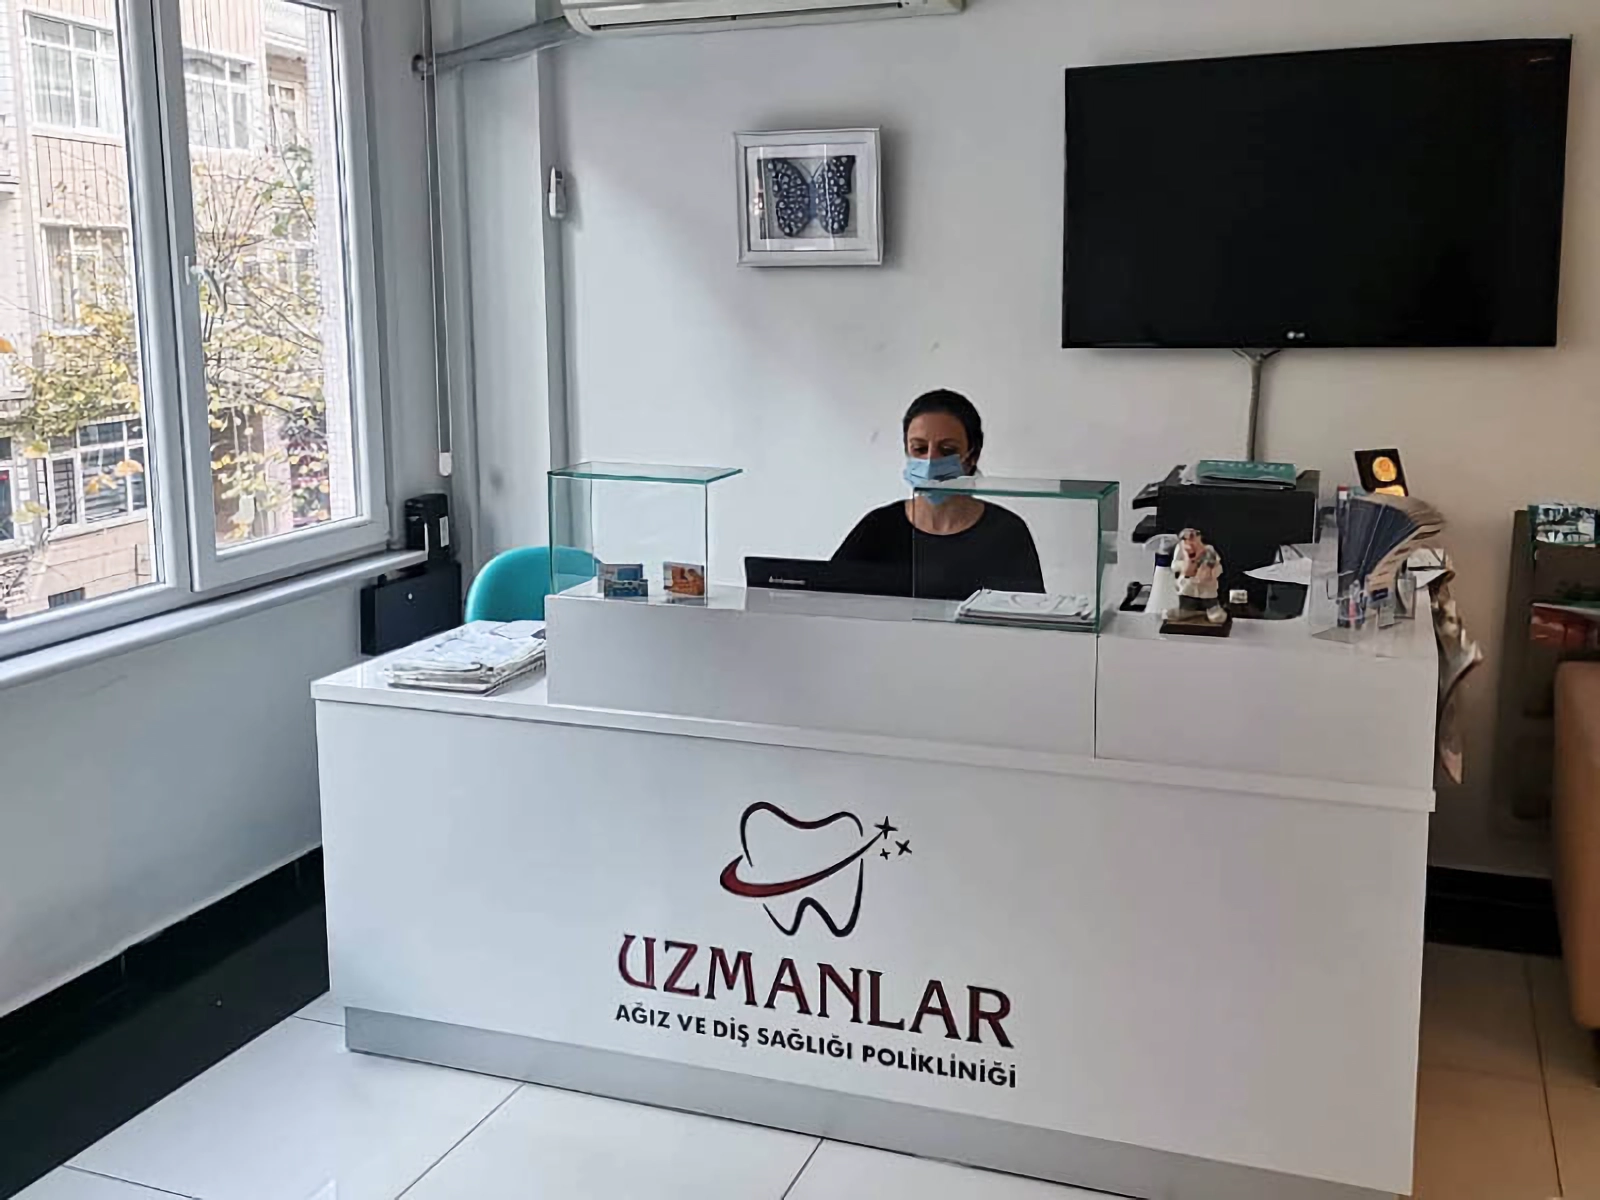 Адміністратор у клініці Uzmanlar у Стамбулі